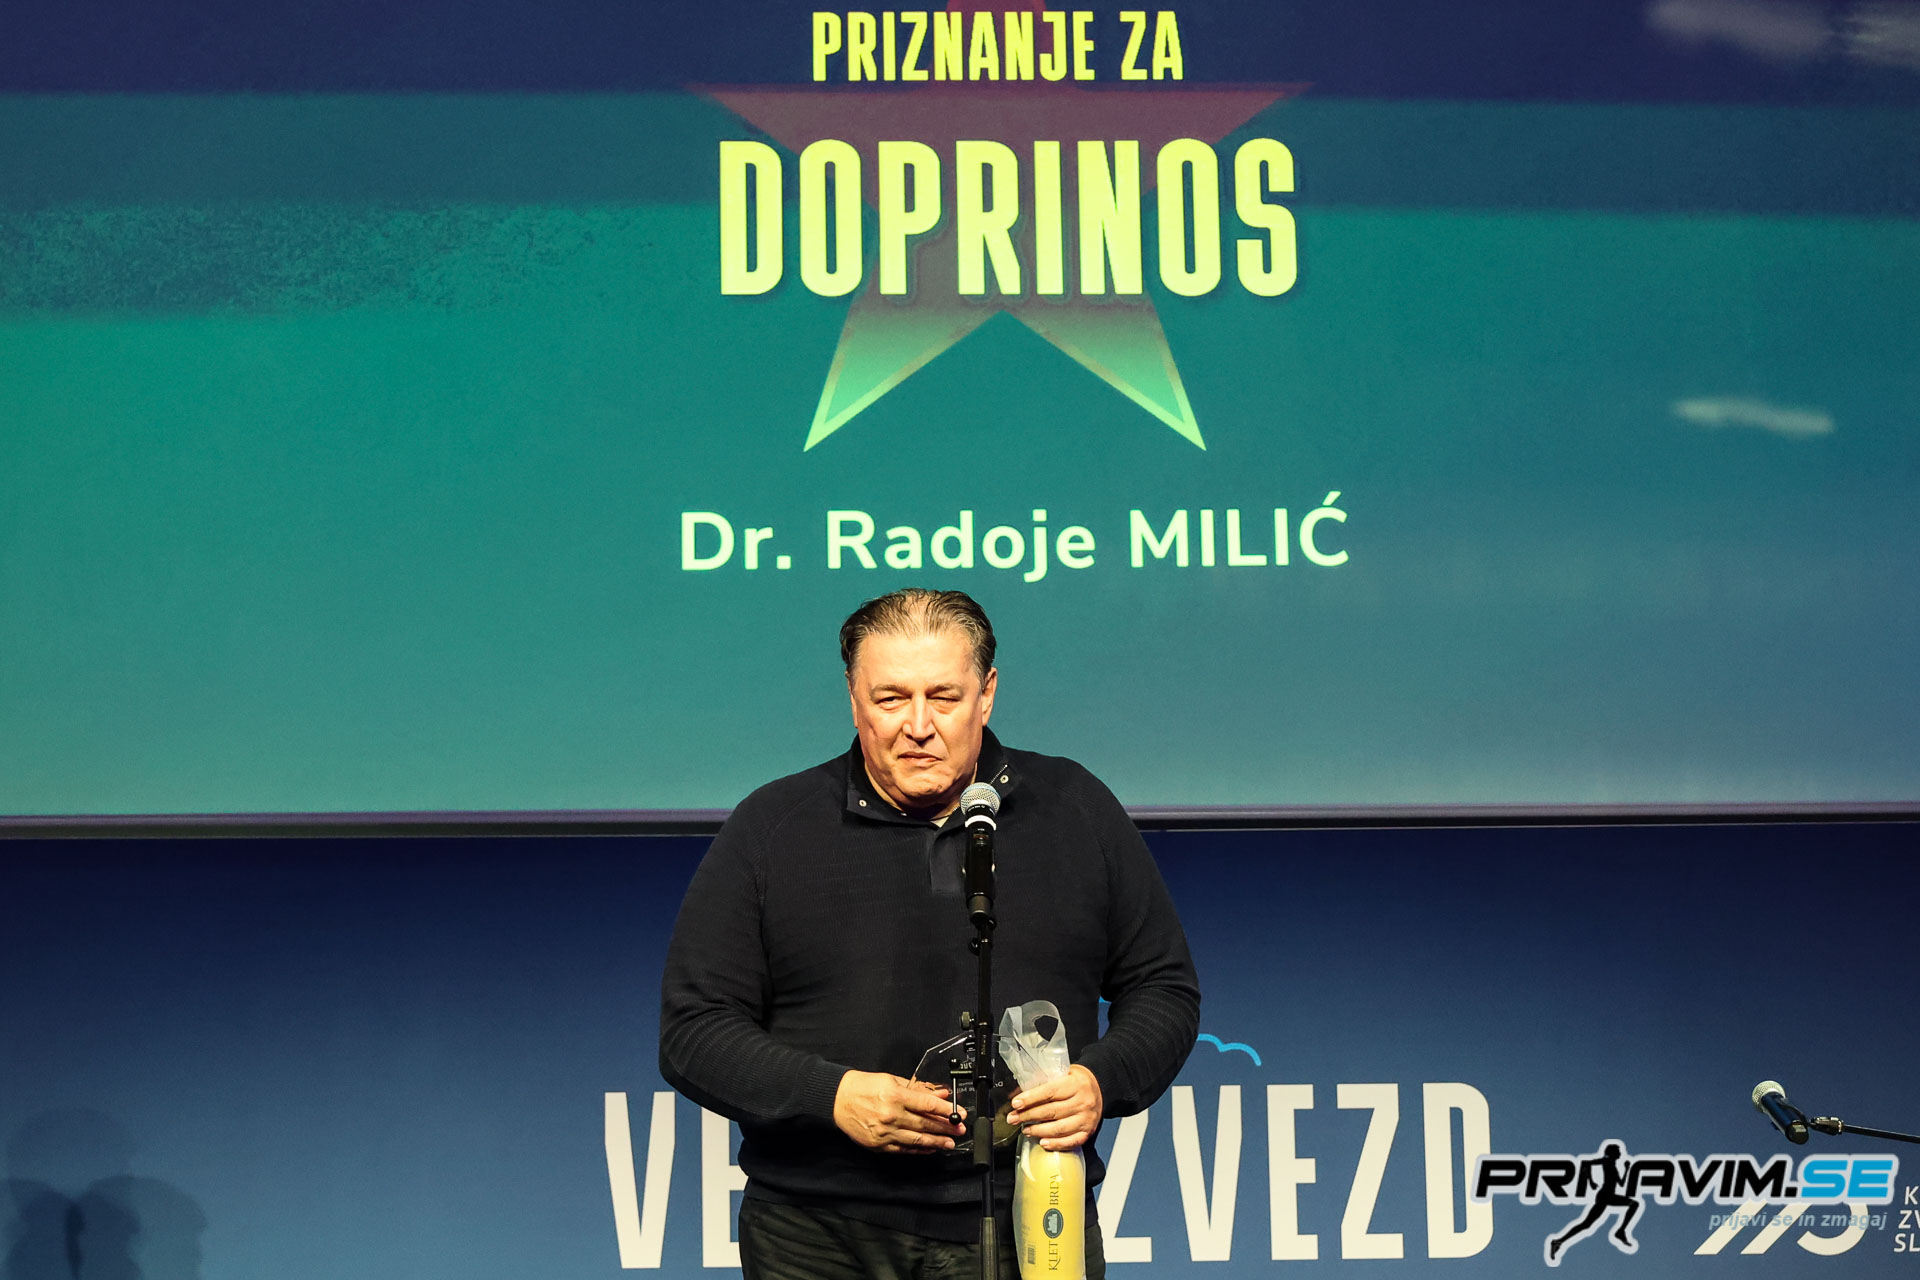 dr. Radoje Milić